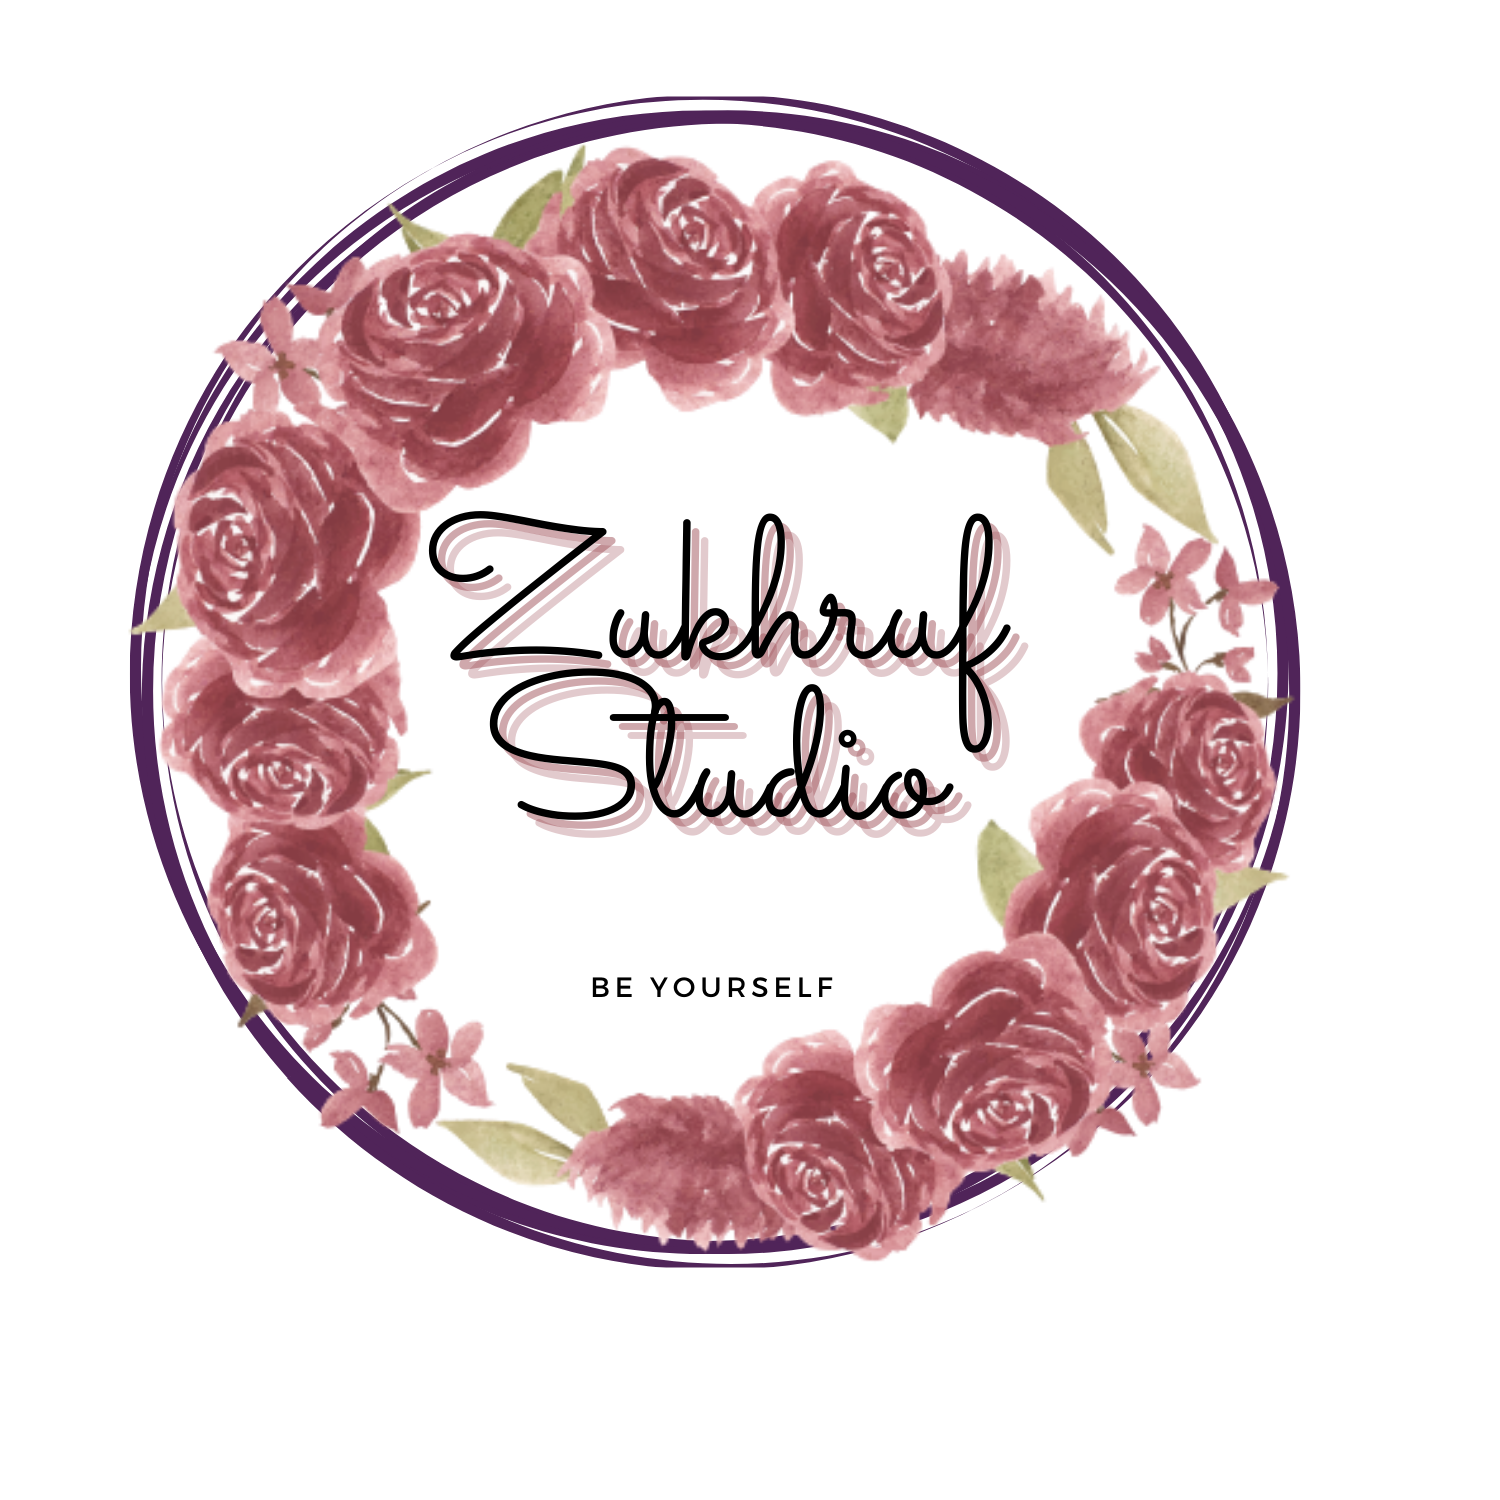 Zukhruf Studio